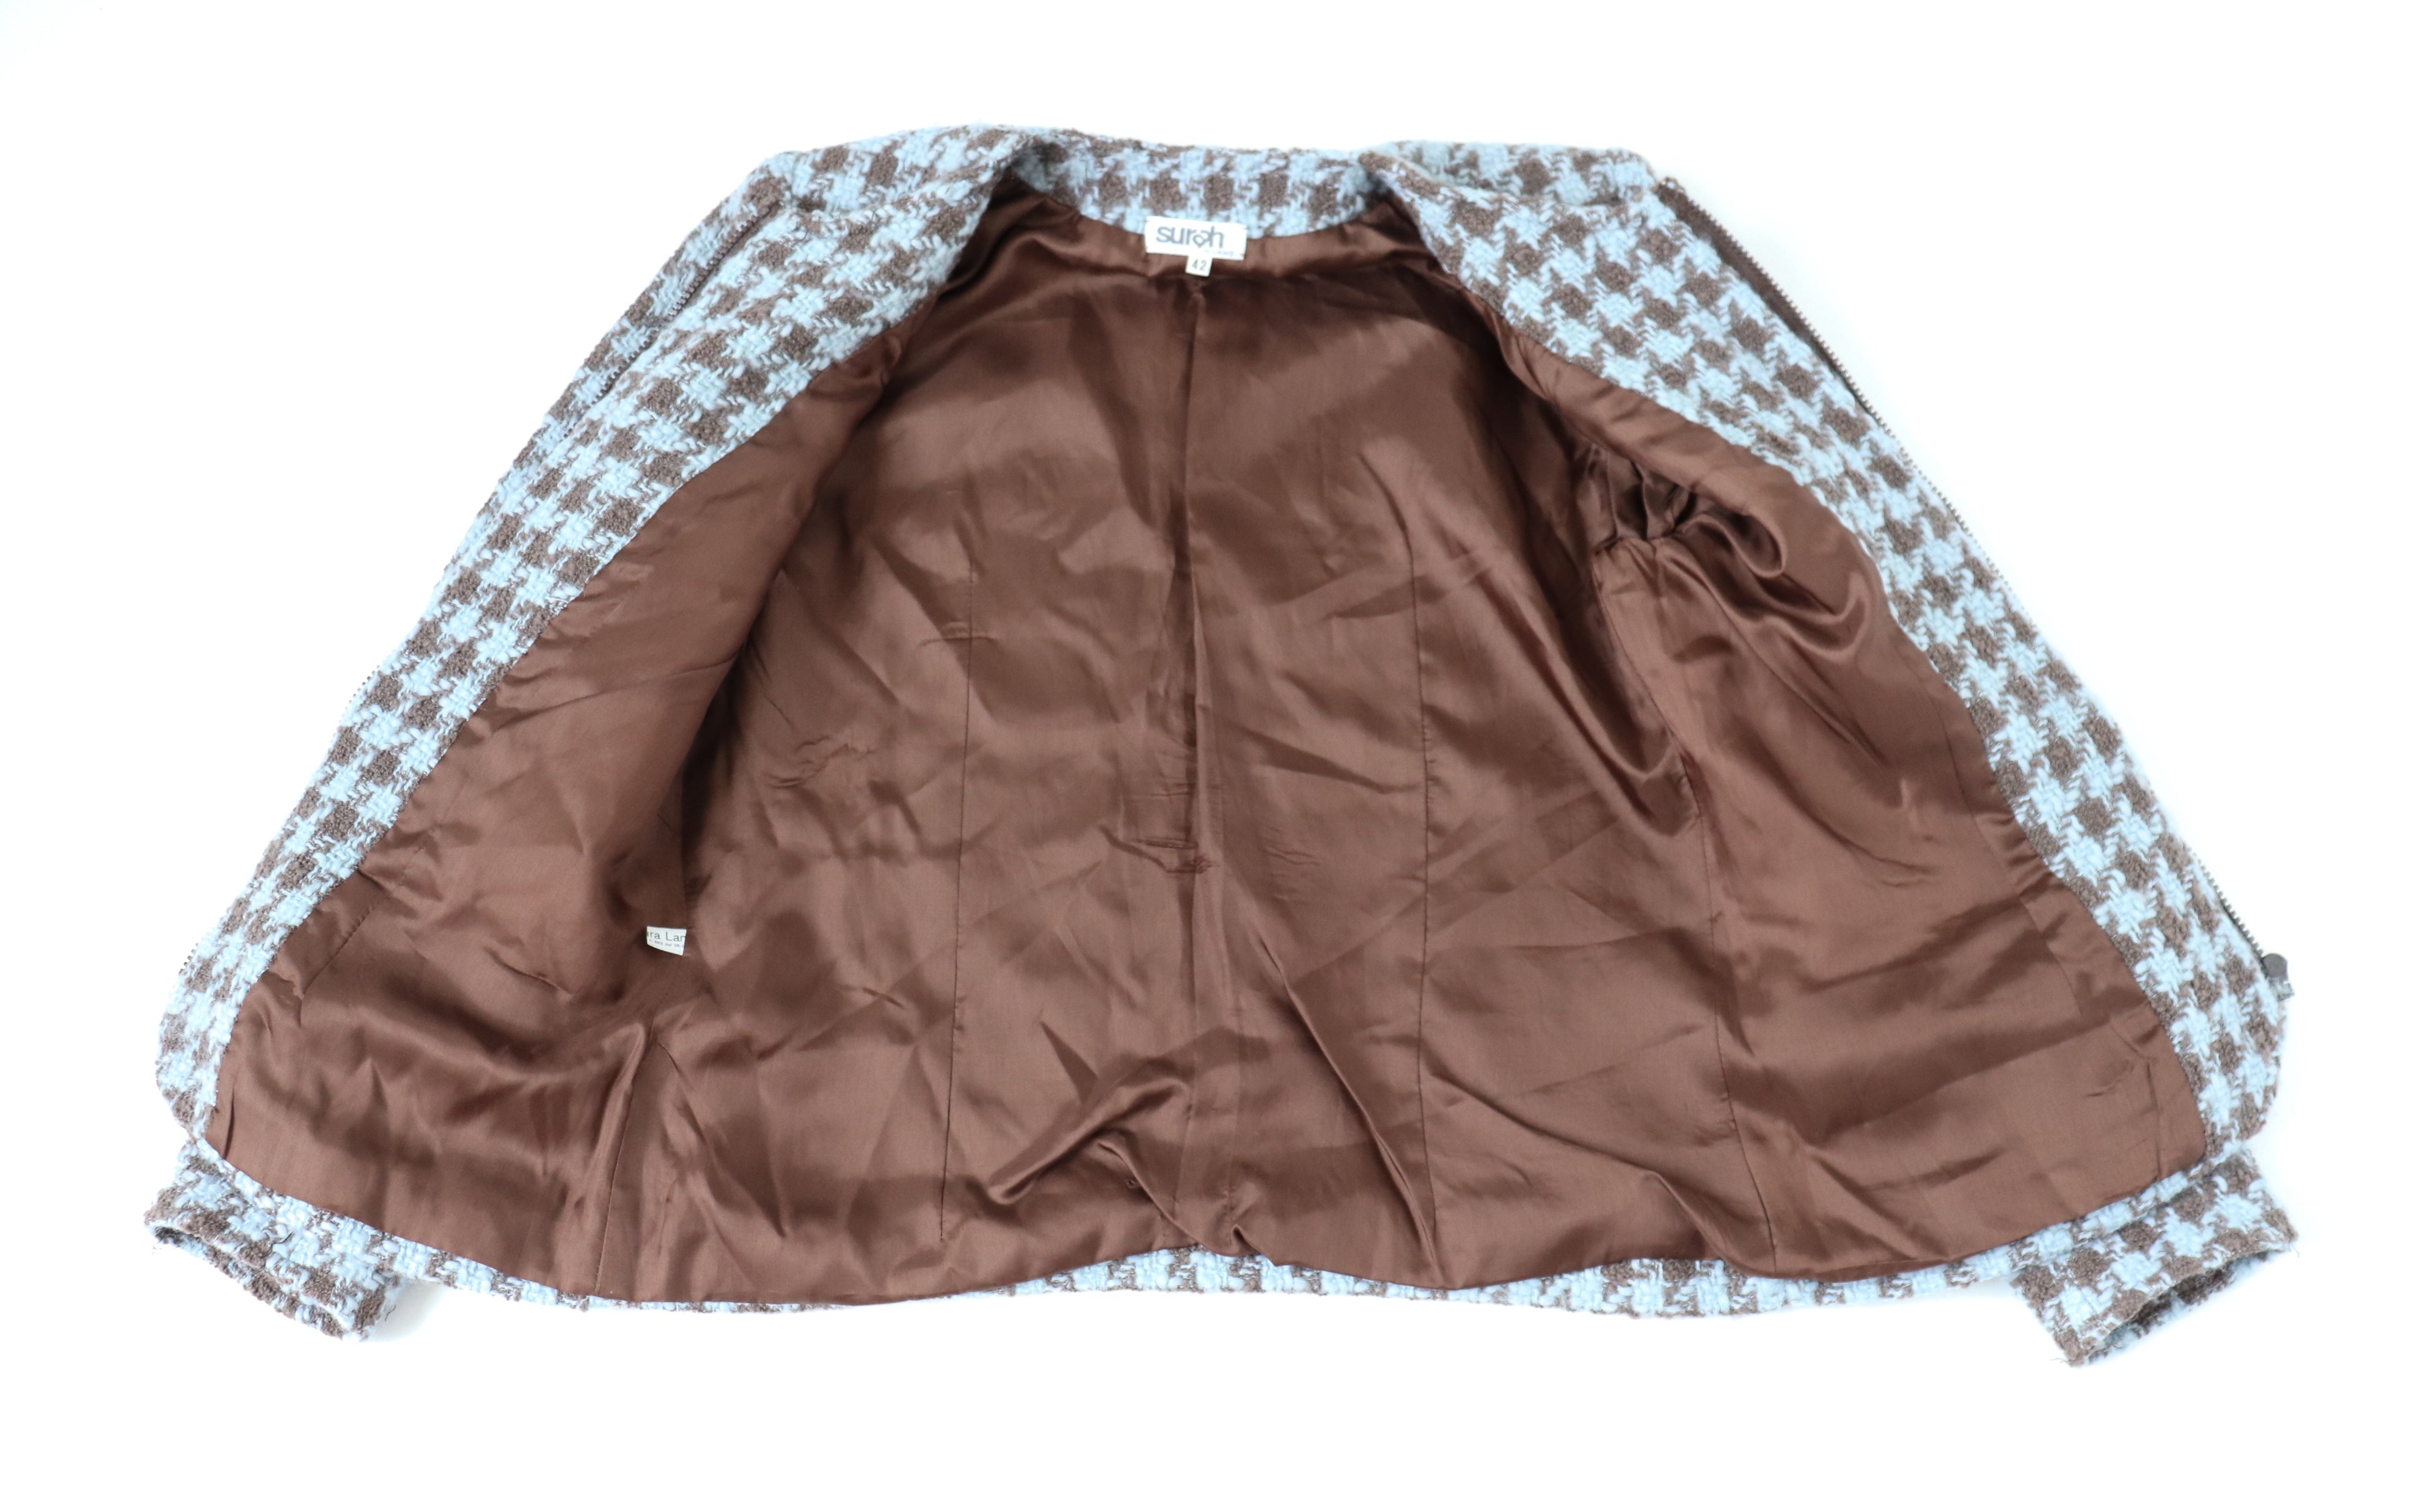 Houndstooth Collarless Jacket - Blue / Brown Wool - Vintage - Surah - 42 Fit S / M - UK 10 / 12